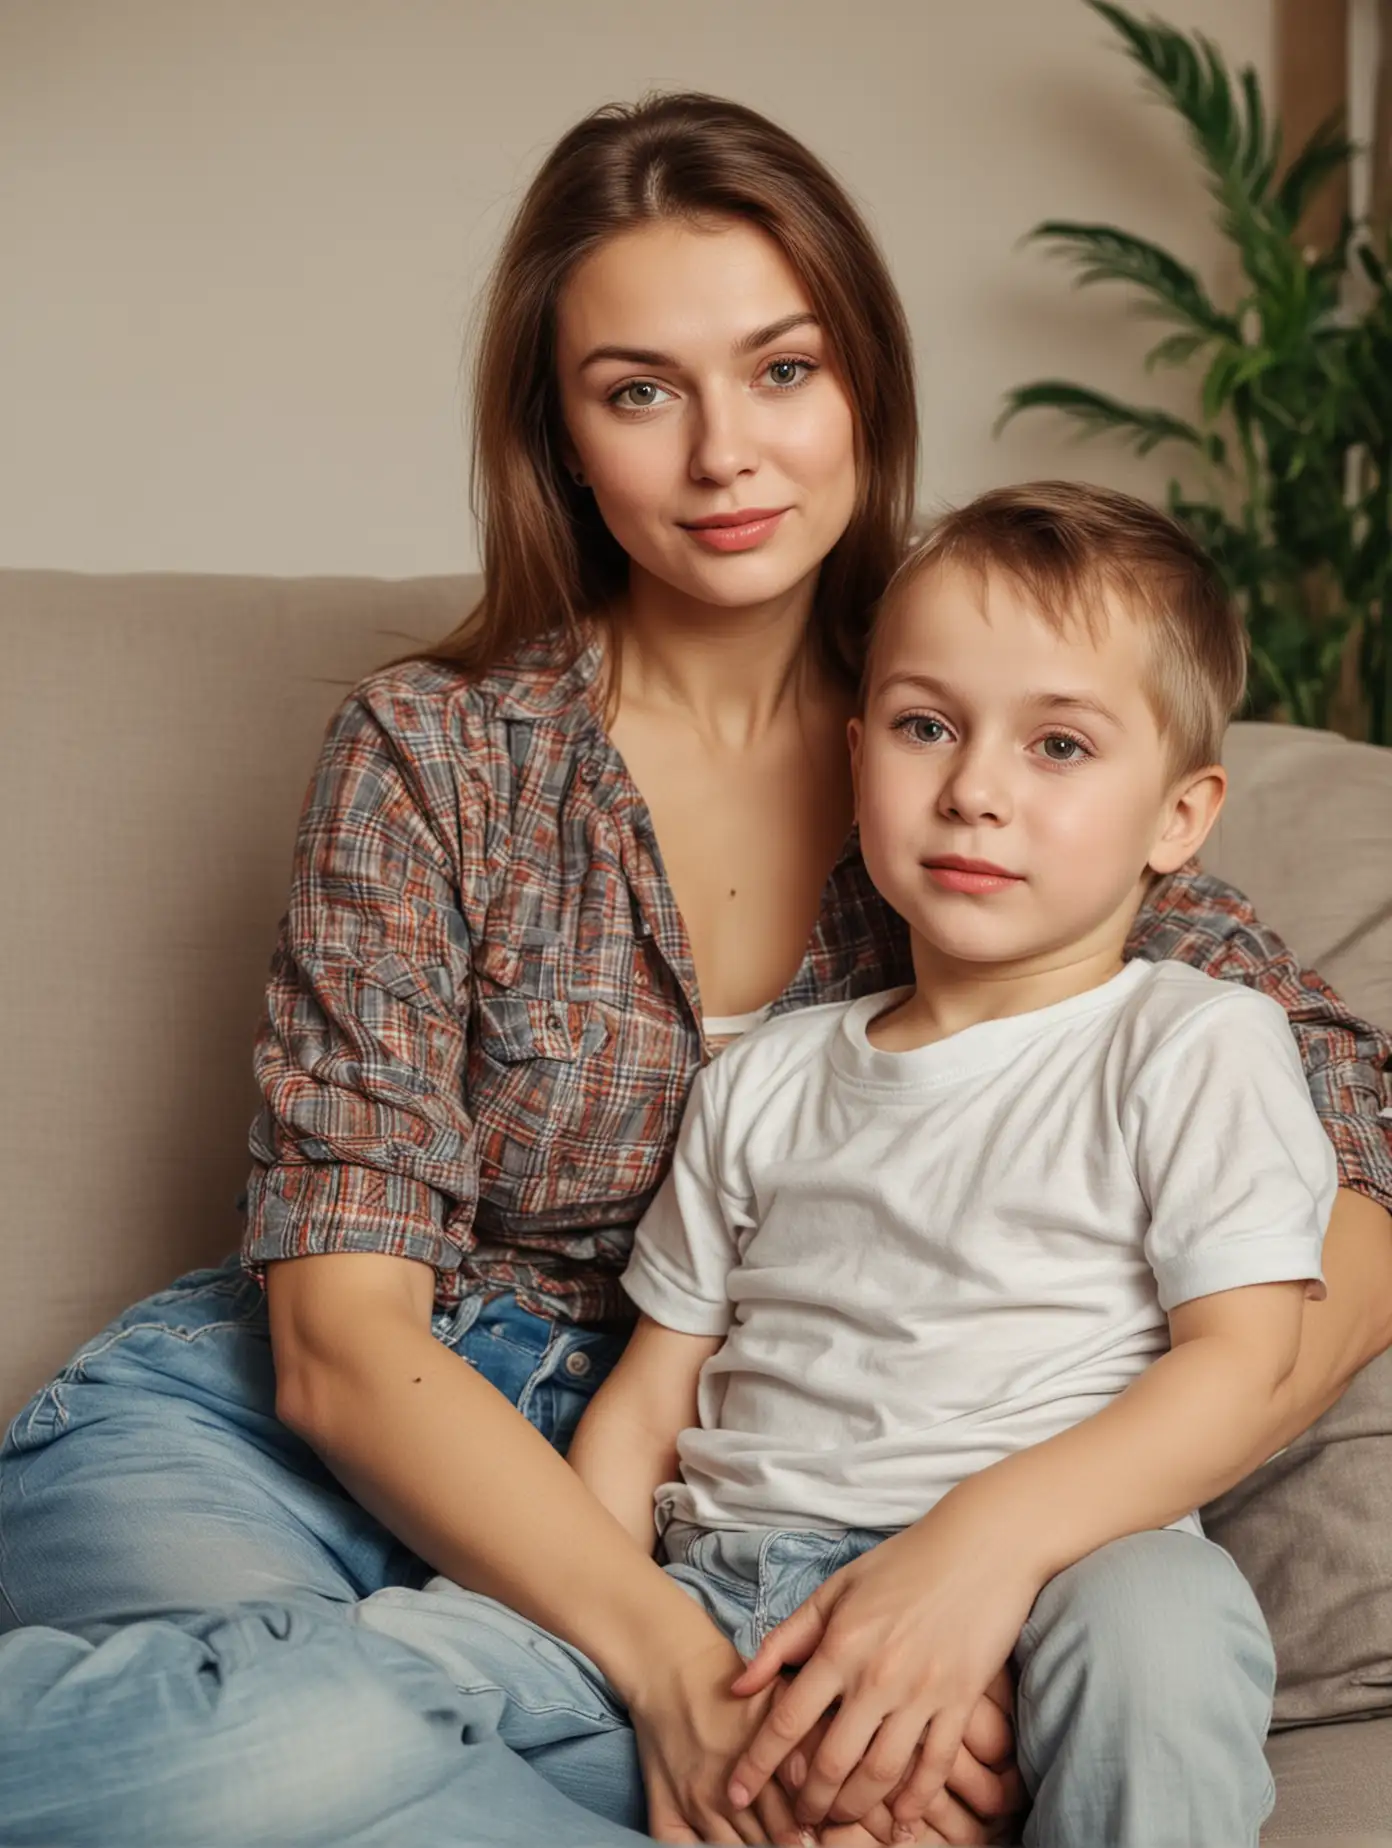 Русская красивая женщина 30 лет с маленьким сыном в квартире на диване